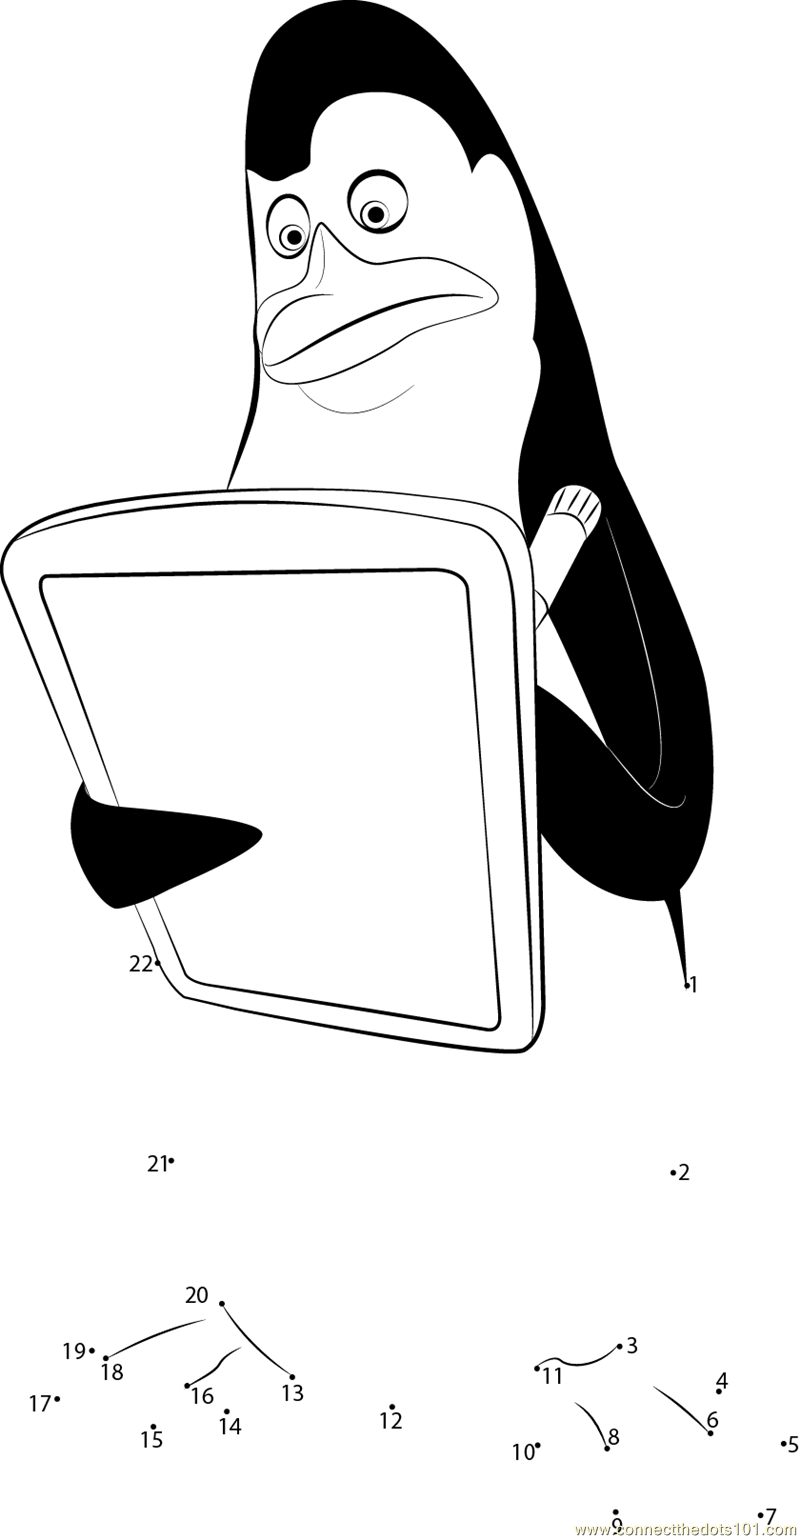 Penguin Reading a Book